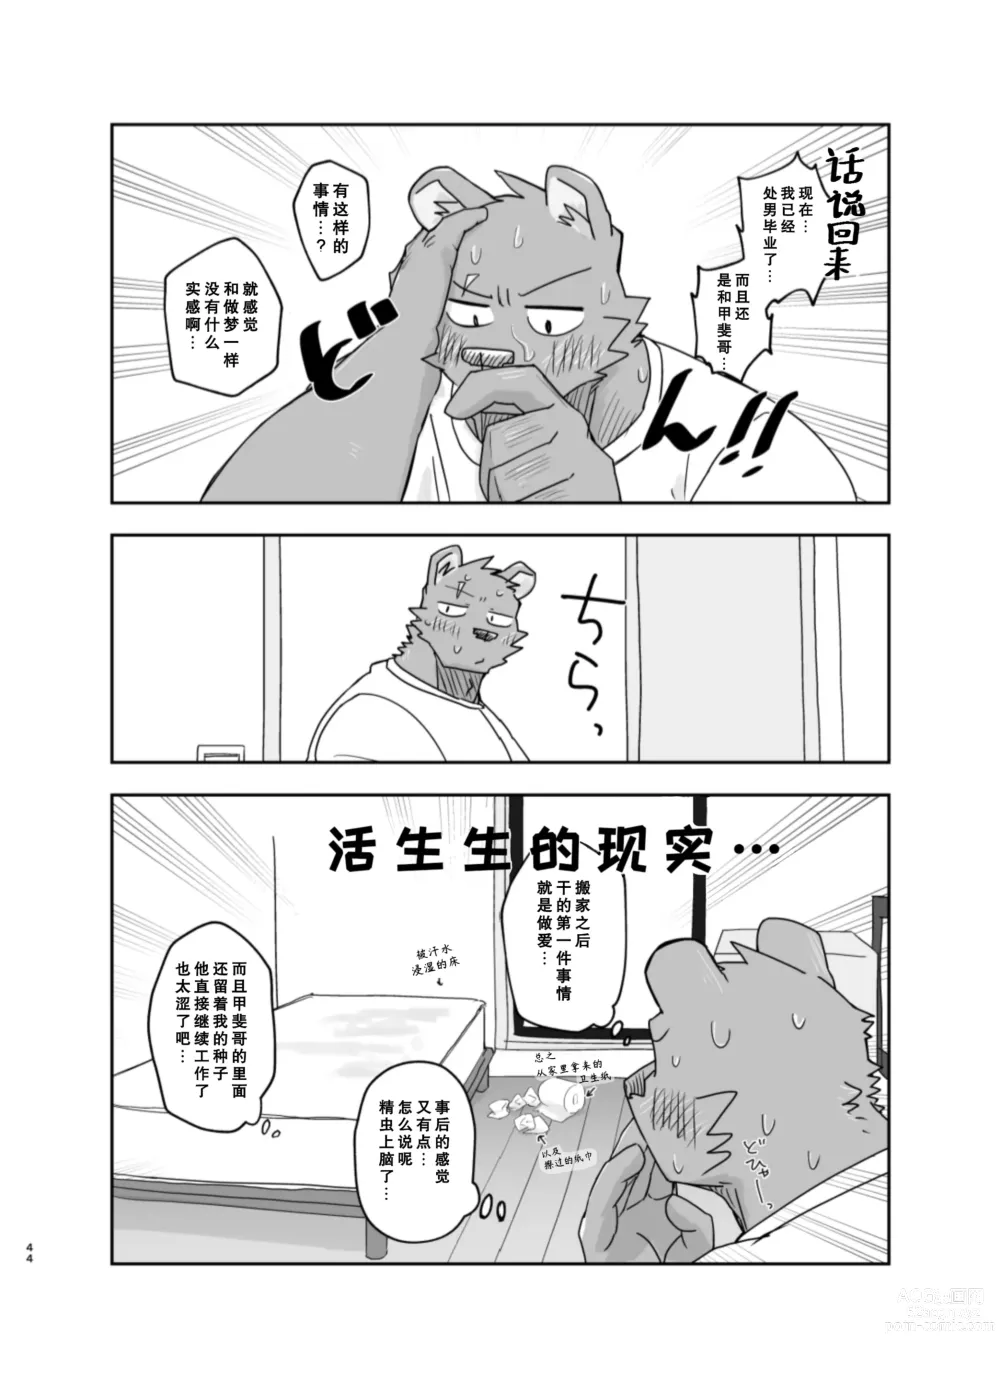 Page 44 of doujinshi 搬家的十分钟服务